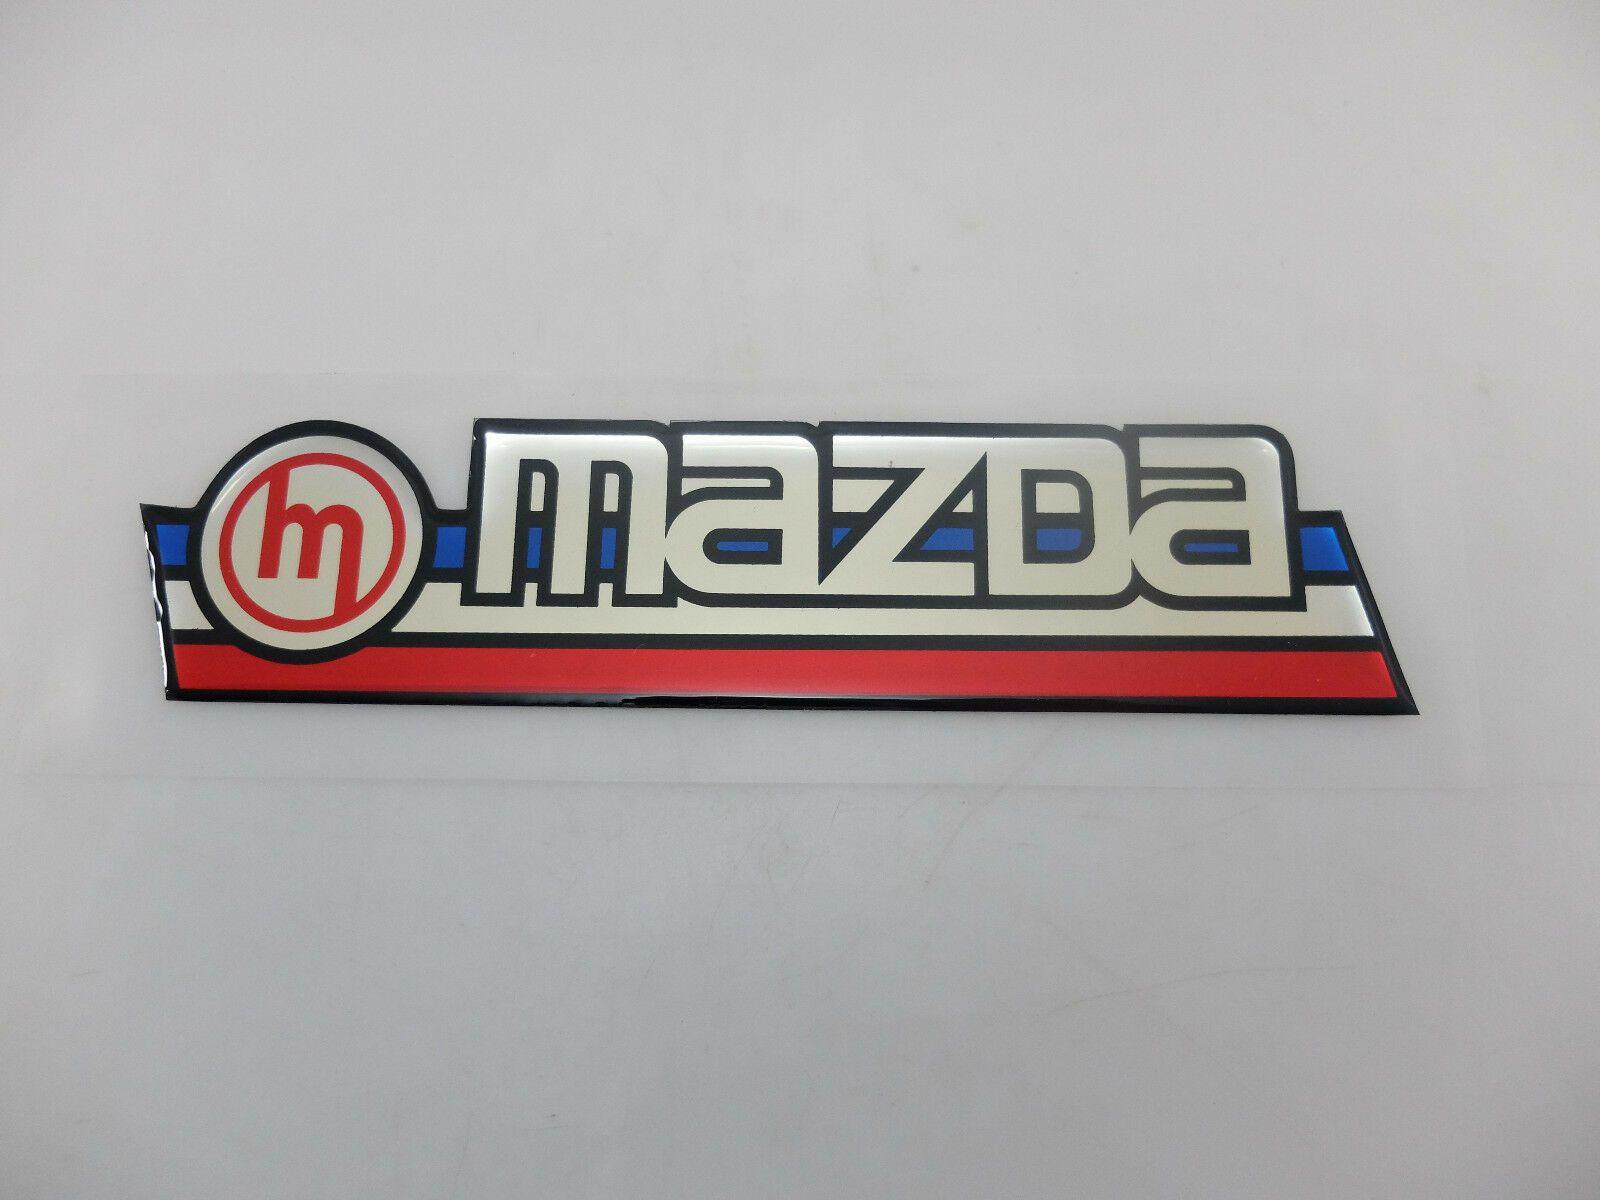 Vintage Mazda Logo - MAZDA Car Old Classic Vintage Back Decal Sticker Exterior Trim NOS